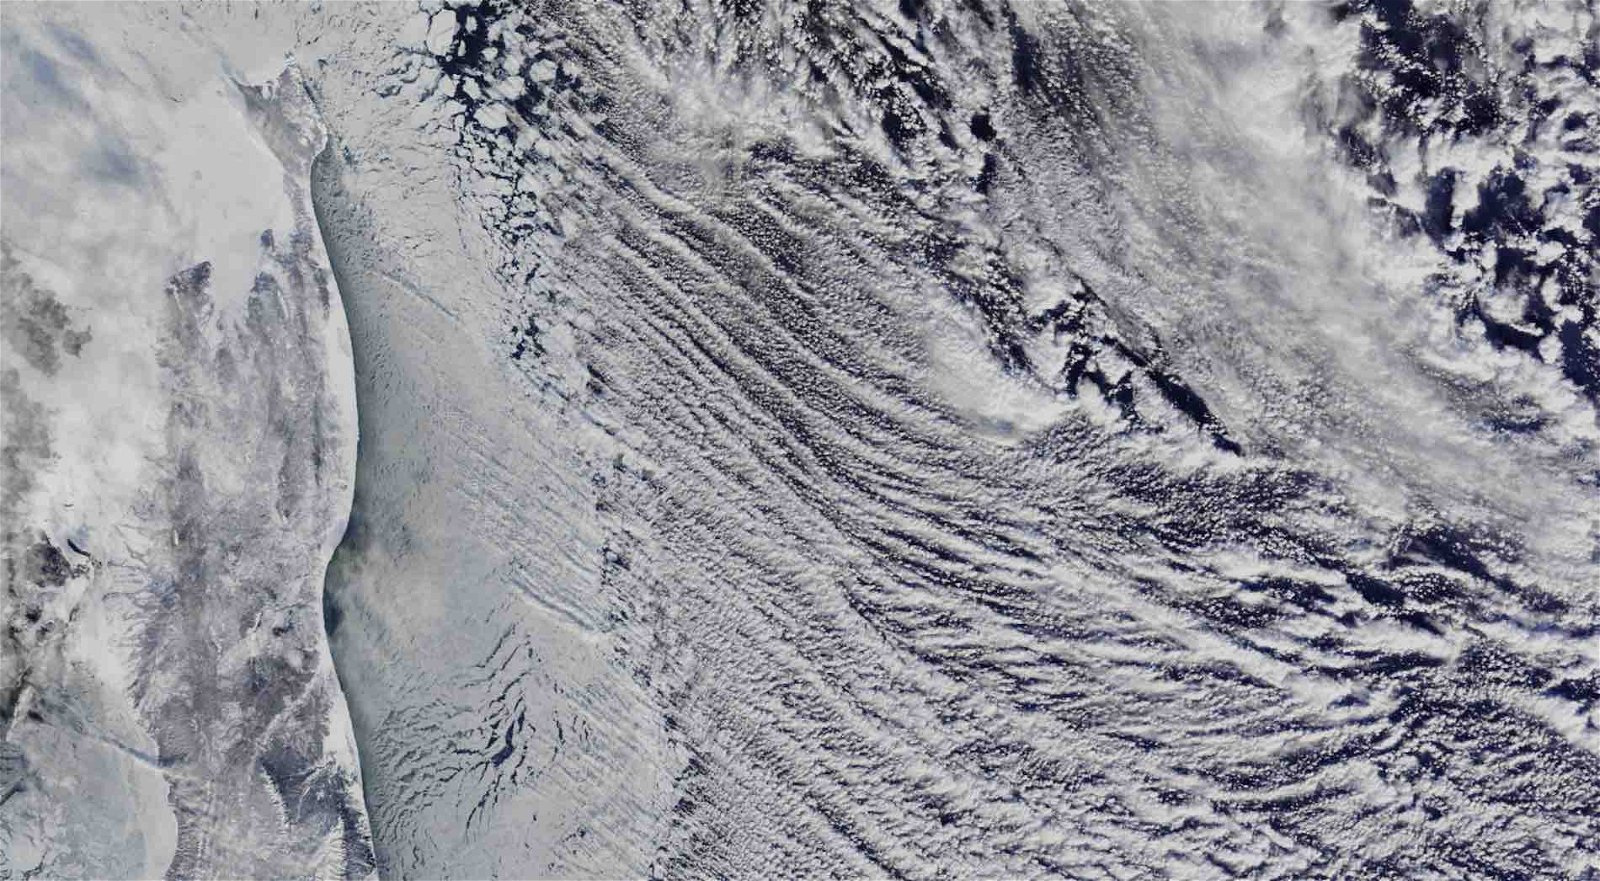 Imagens de satélite da NASA revelaram algo estranho no céu da costa leste da Rússia